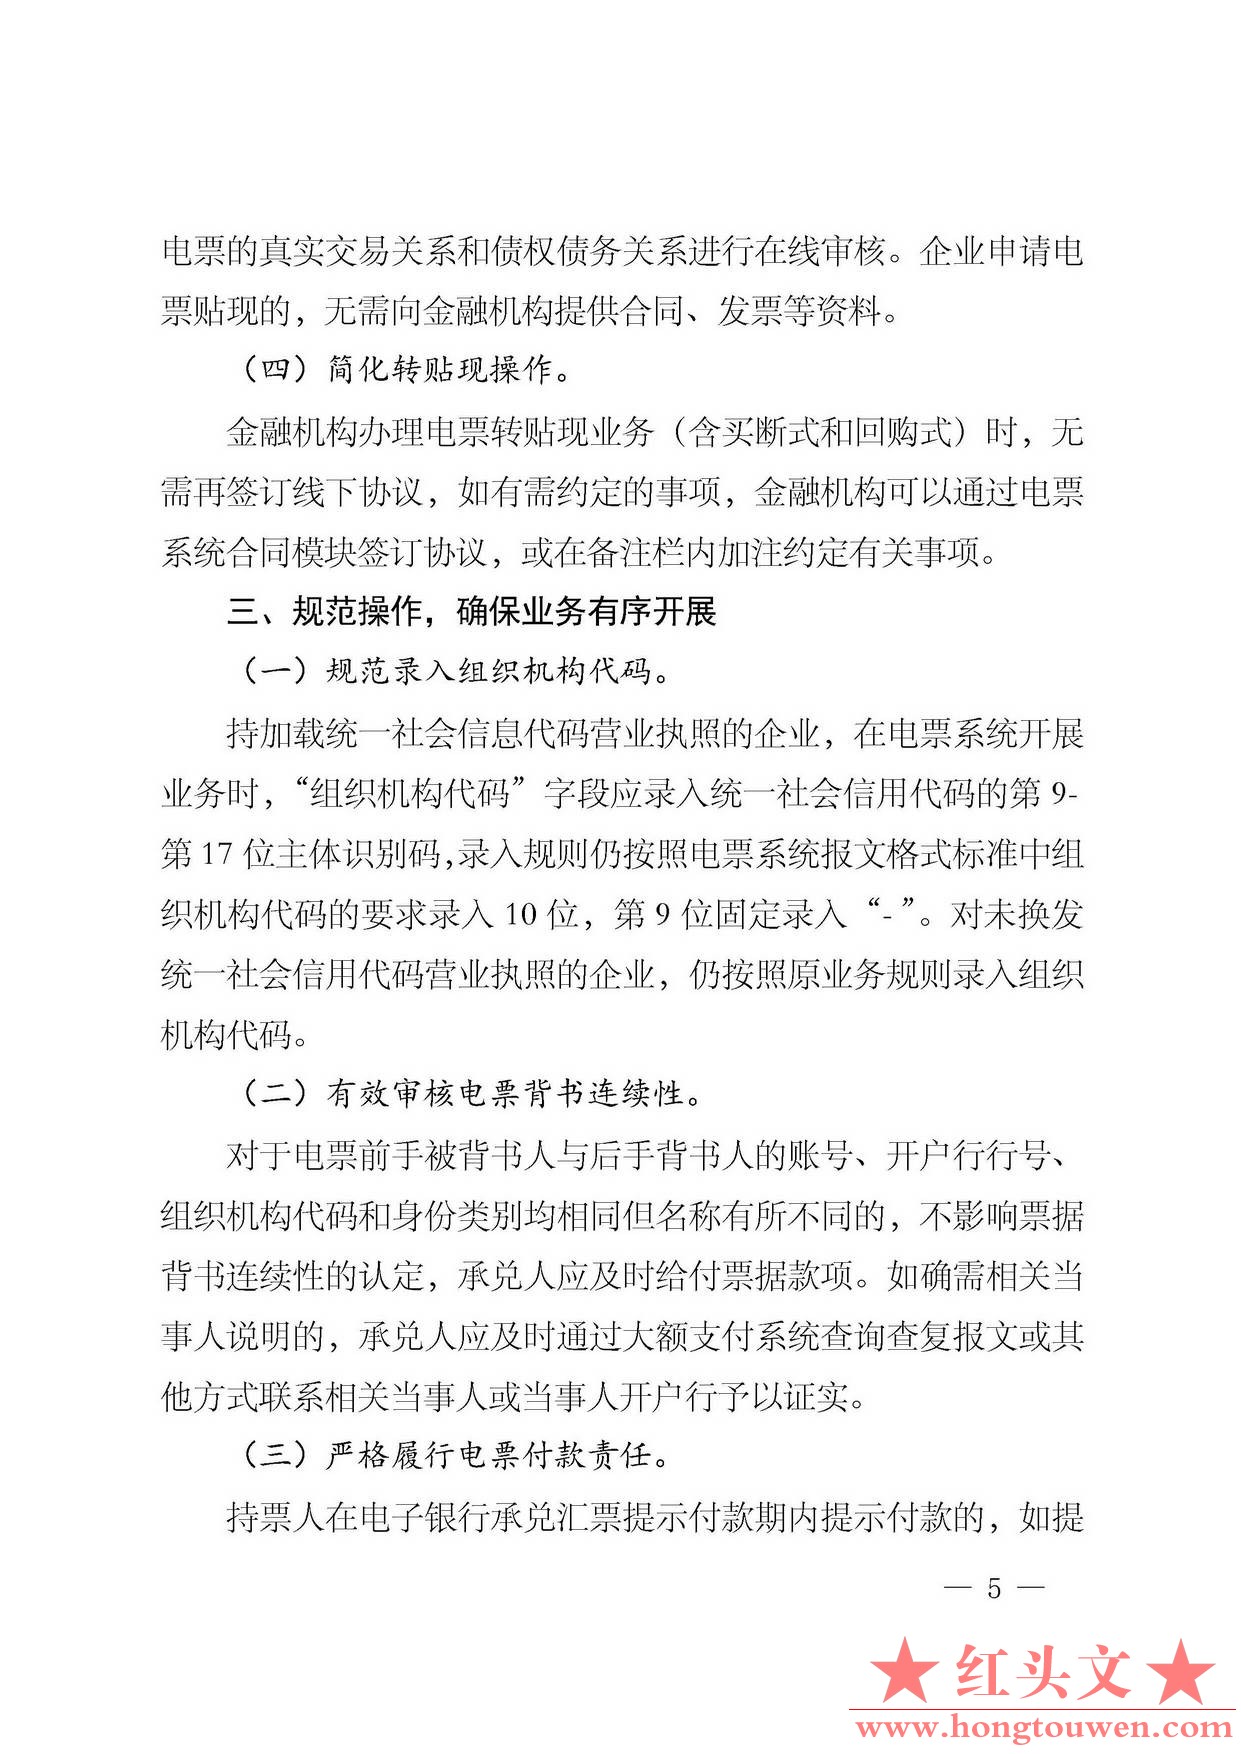 银发[2016]224号-中国人民银行关于规范和促进电子商业汇票业务发展的通知_页面_05.jpg.jpg